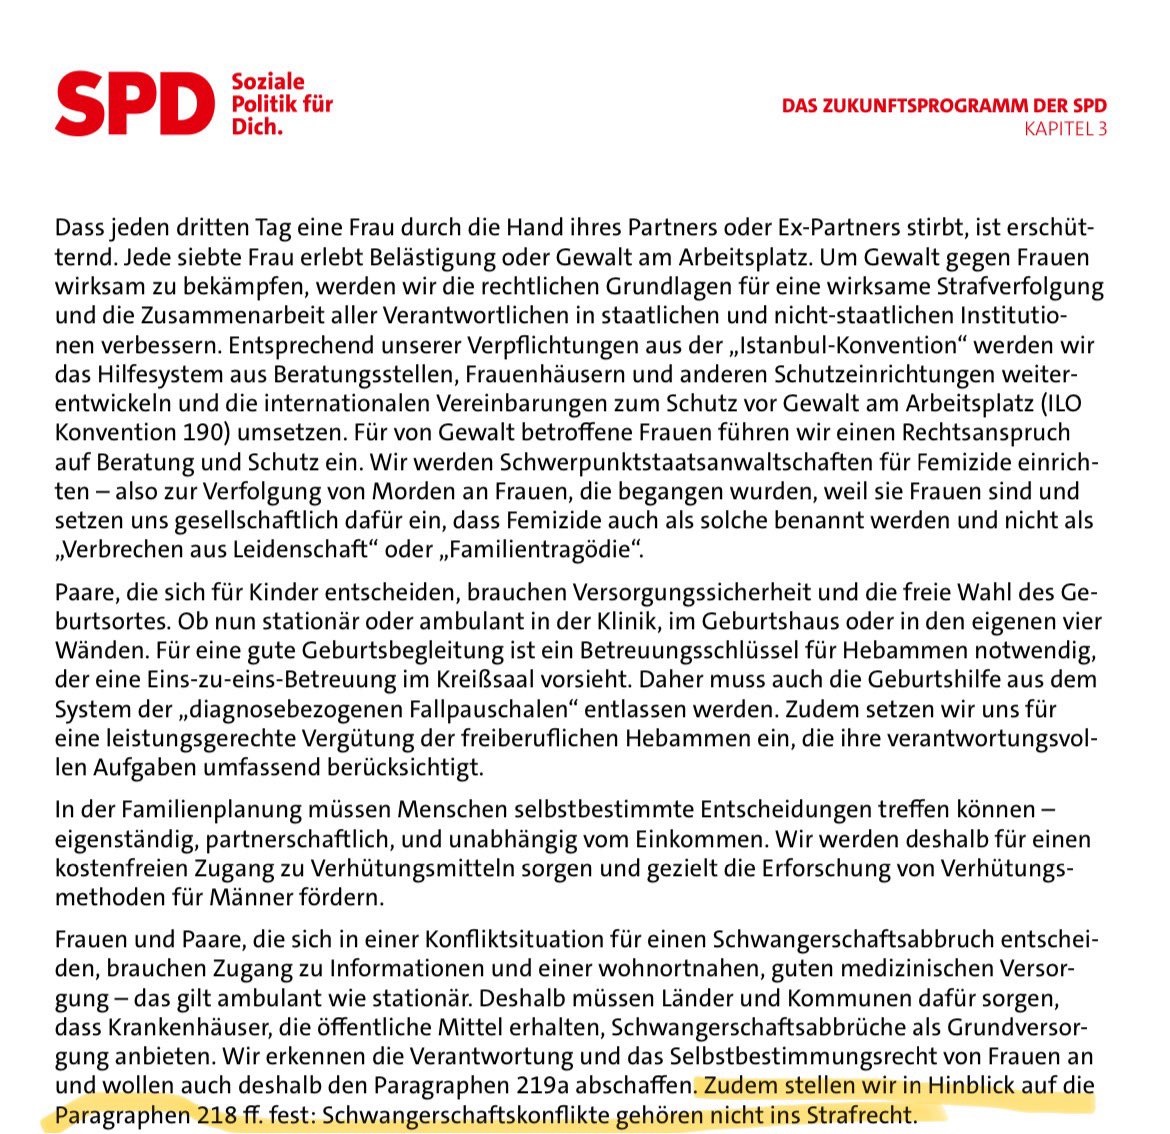 Die @spdbt reagiert auf die Empfehlungen der Kommission zu #Paragraph218 sehr zurückhaltend. Nun wagt sich @KatjaMast vor. „Ich bin persönlich der Meinung: Abtreibung gehört nicht ins Strafgesetzbuch.“ Das ist genau die Position der SPD im Wahlprogramm. Warum also so defensiv?